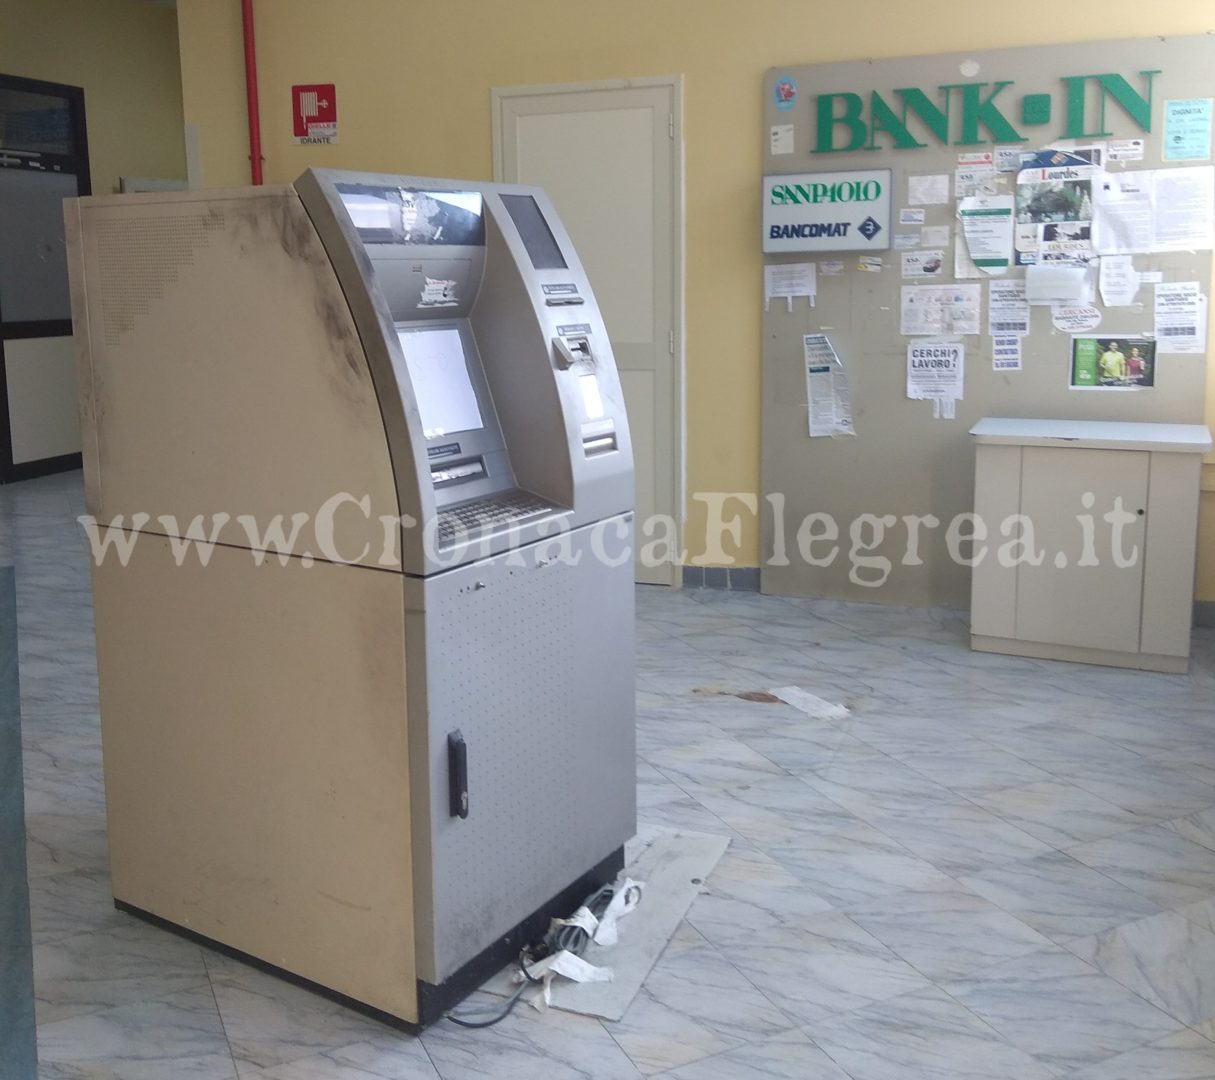 POZZUOLI/ Ladri nell’ospedale tentano di rubare il bancomat: messi in fuga dall’antifurto